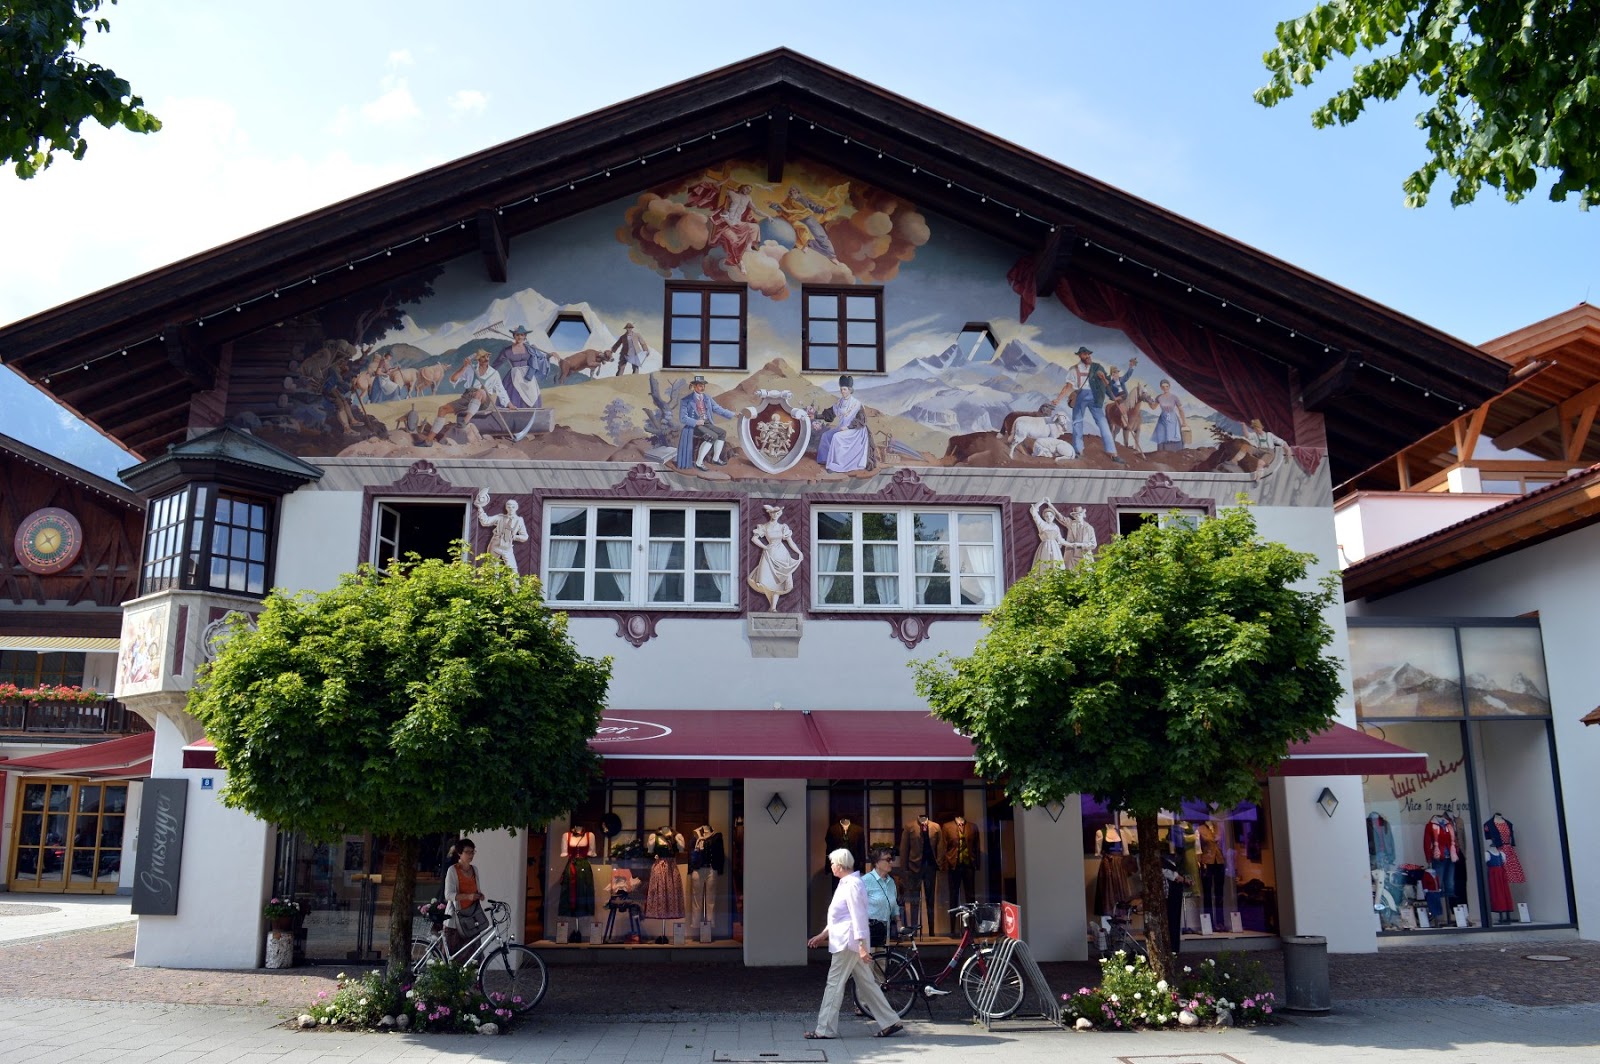 VILLAGGIO-Alta Baviera 1940-46 per Agfa-COLOR-COLORI Dia-in-Garmisch-Partenkirchen 